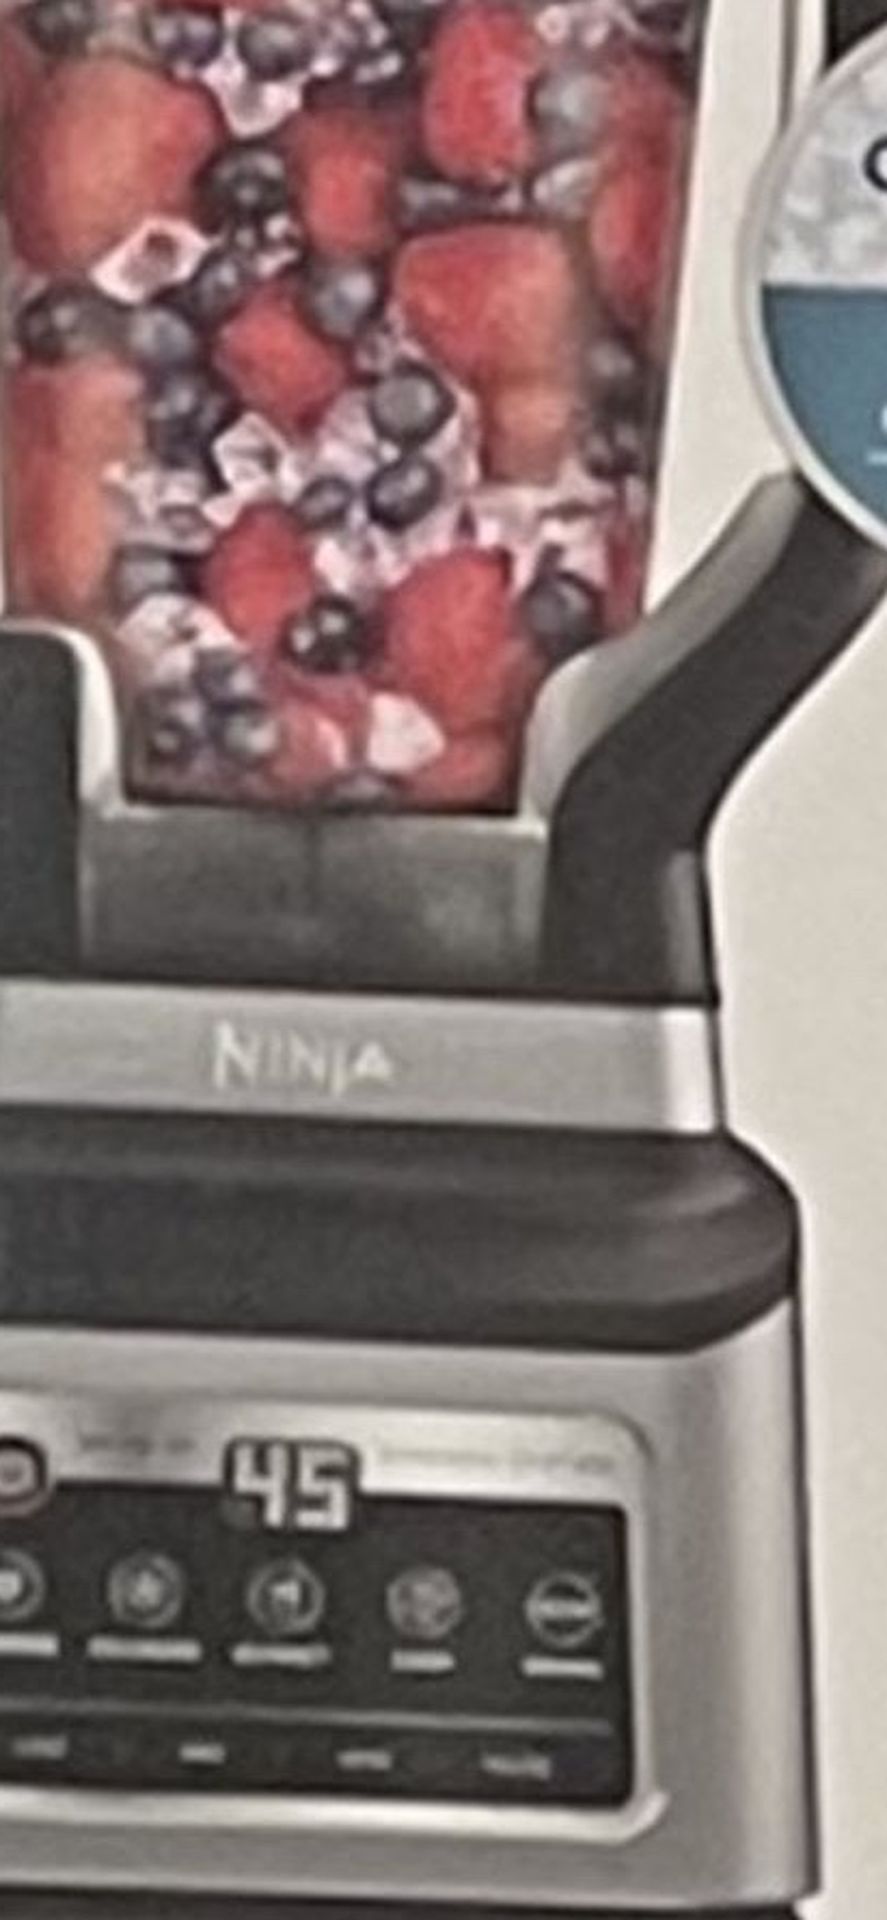 Ninja Blender 1400 Watt